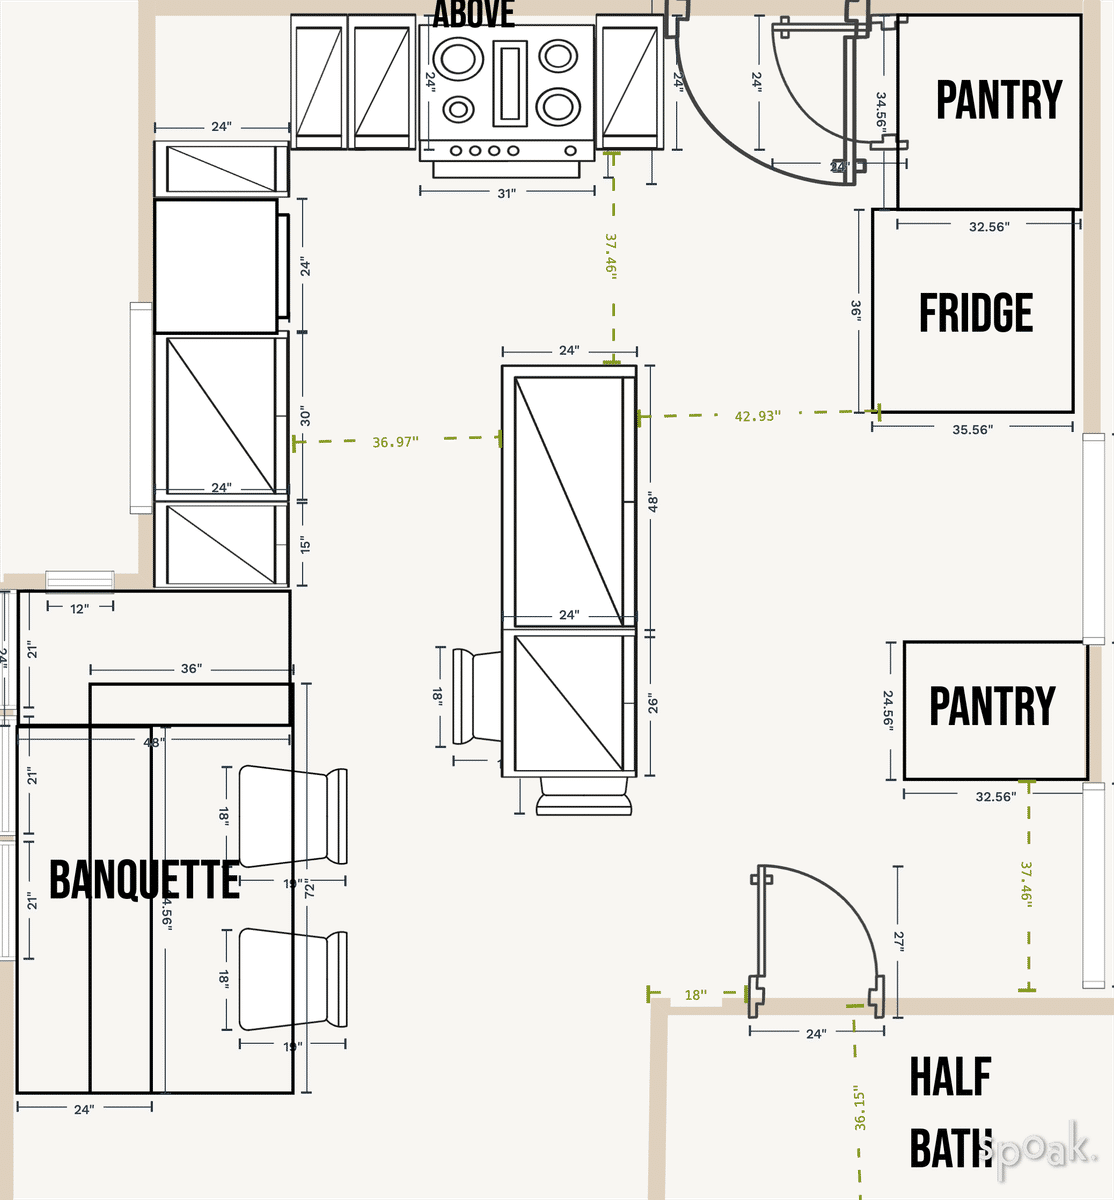 Kitchen + Living Room Floor Plan designed by MK Alderman